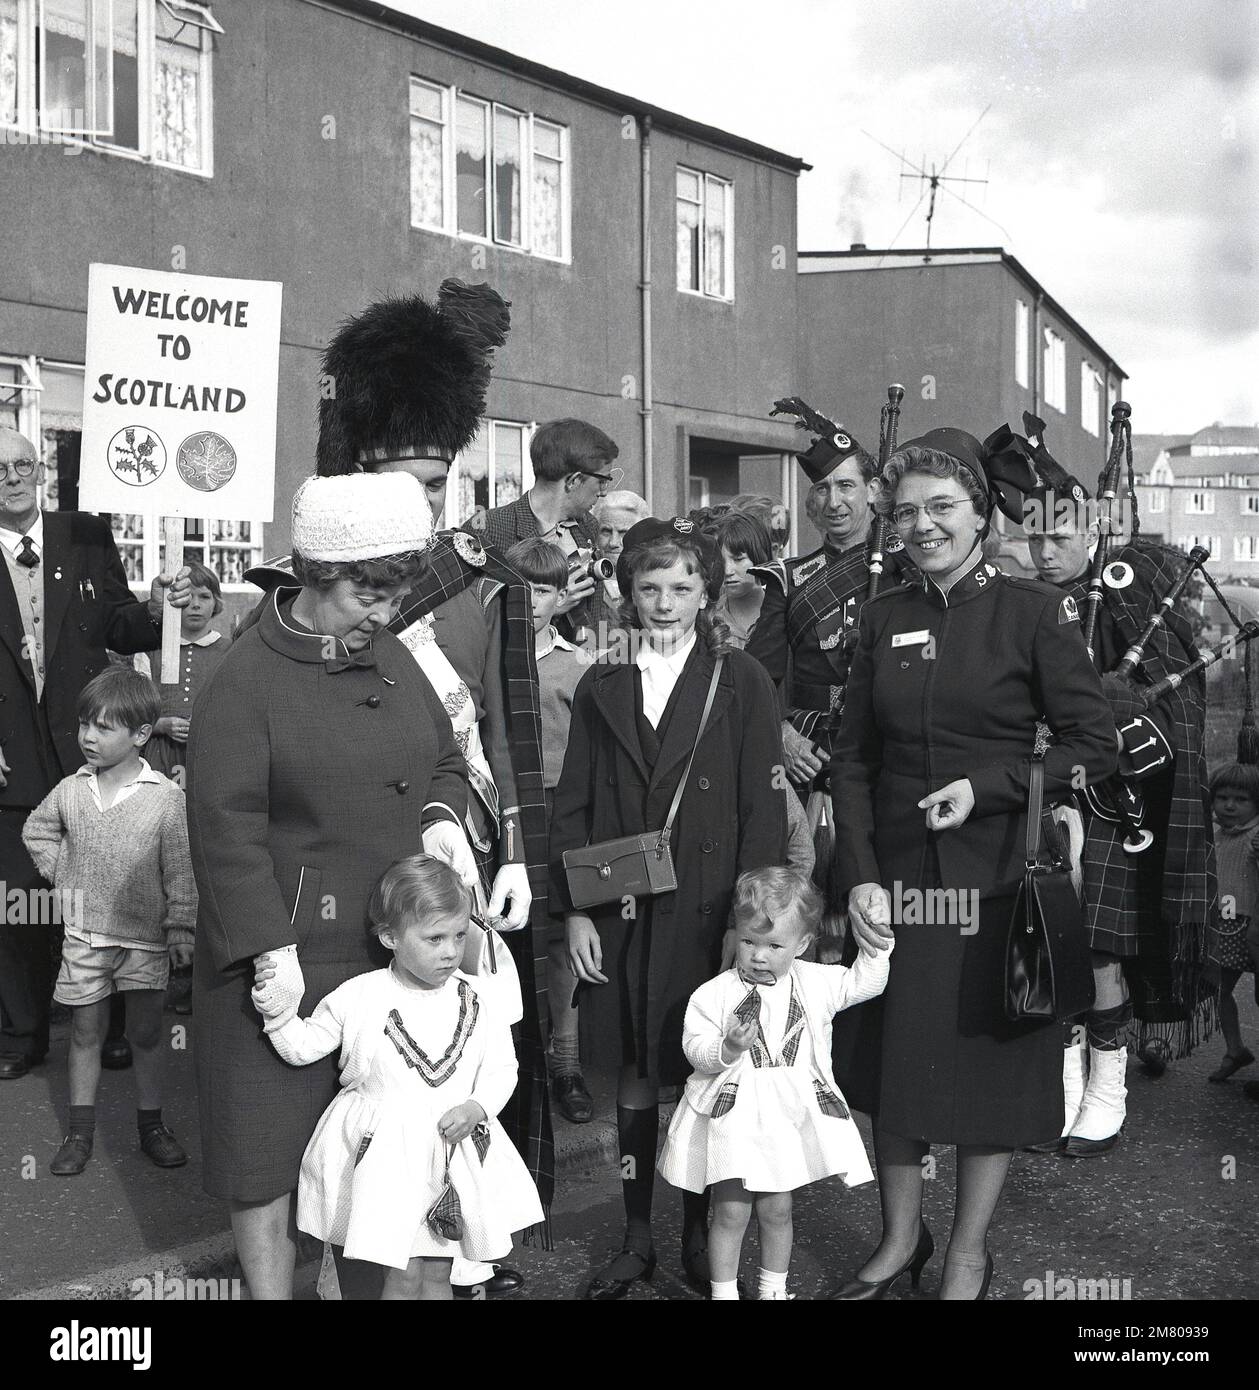 1960s, le groupe historique de bagpipe joue dans la rue, comme une dame de l'Armée du Salut au Canada paie un vistor au twon/village, Fife, Écosse, Royaume-Uni. Banque D'Images